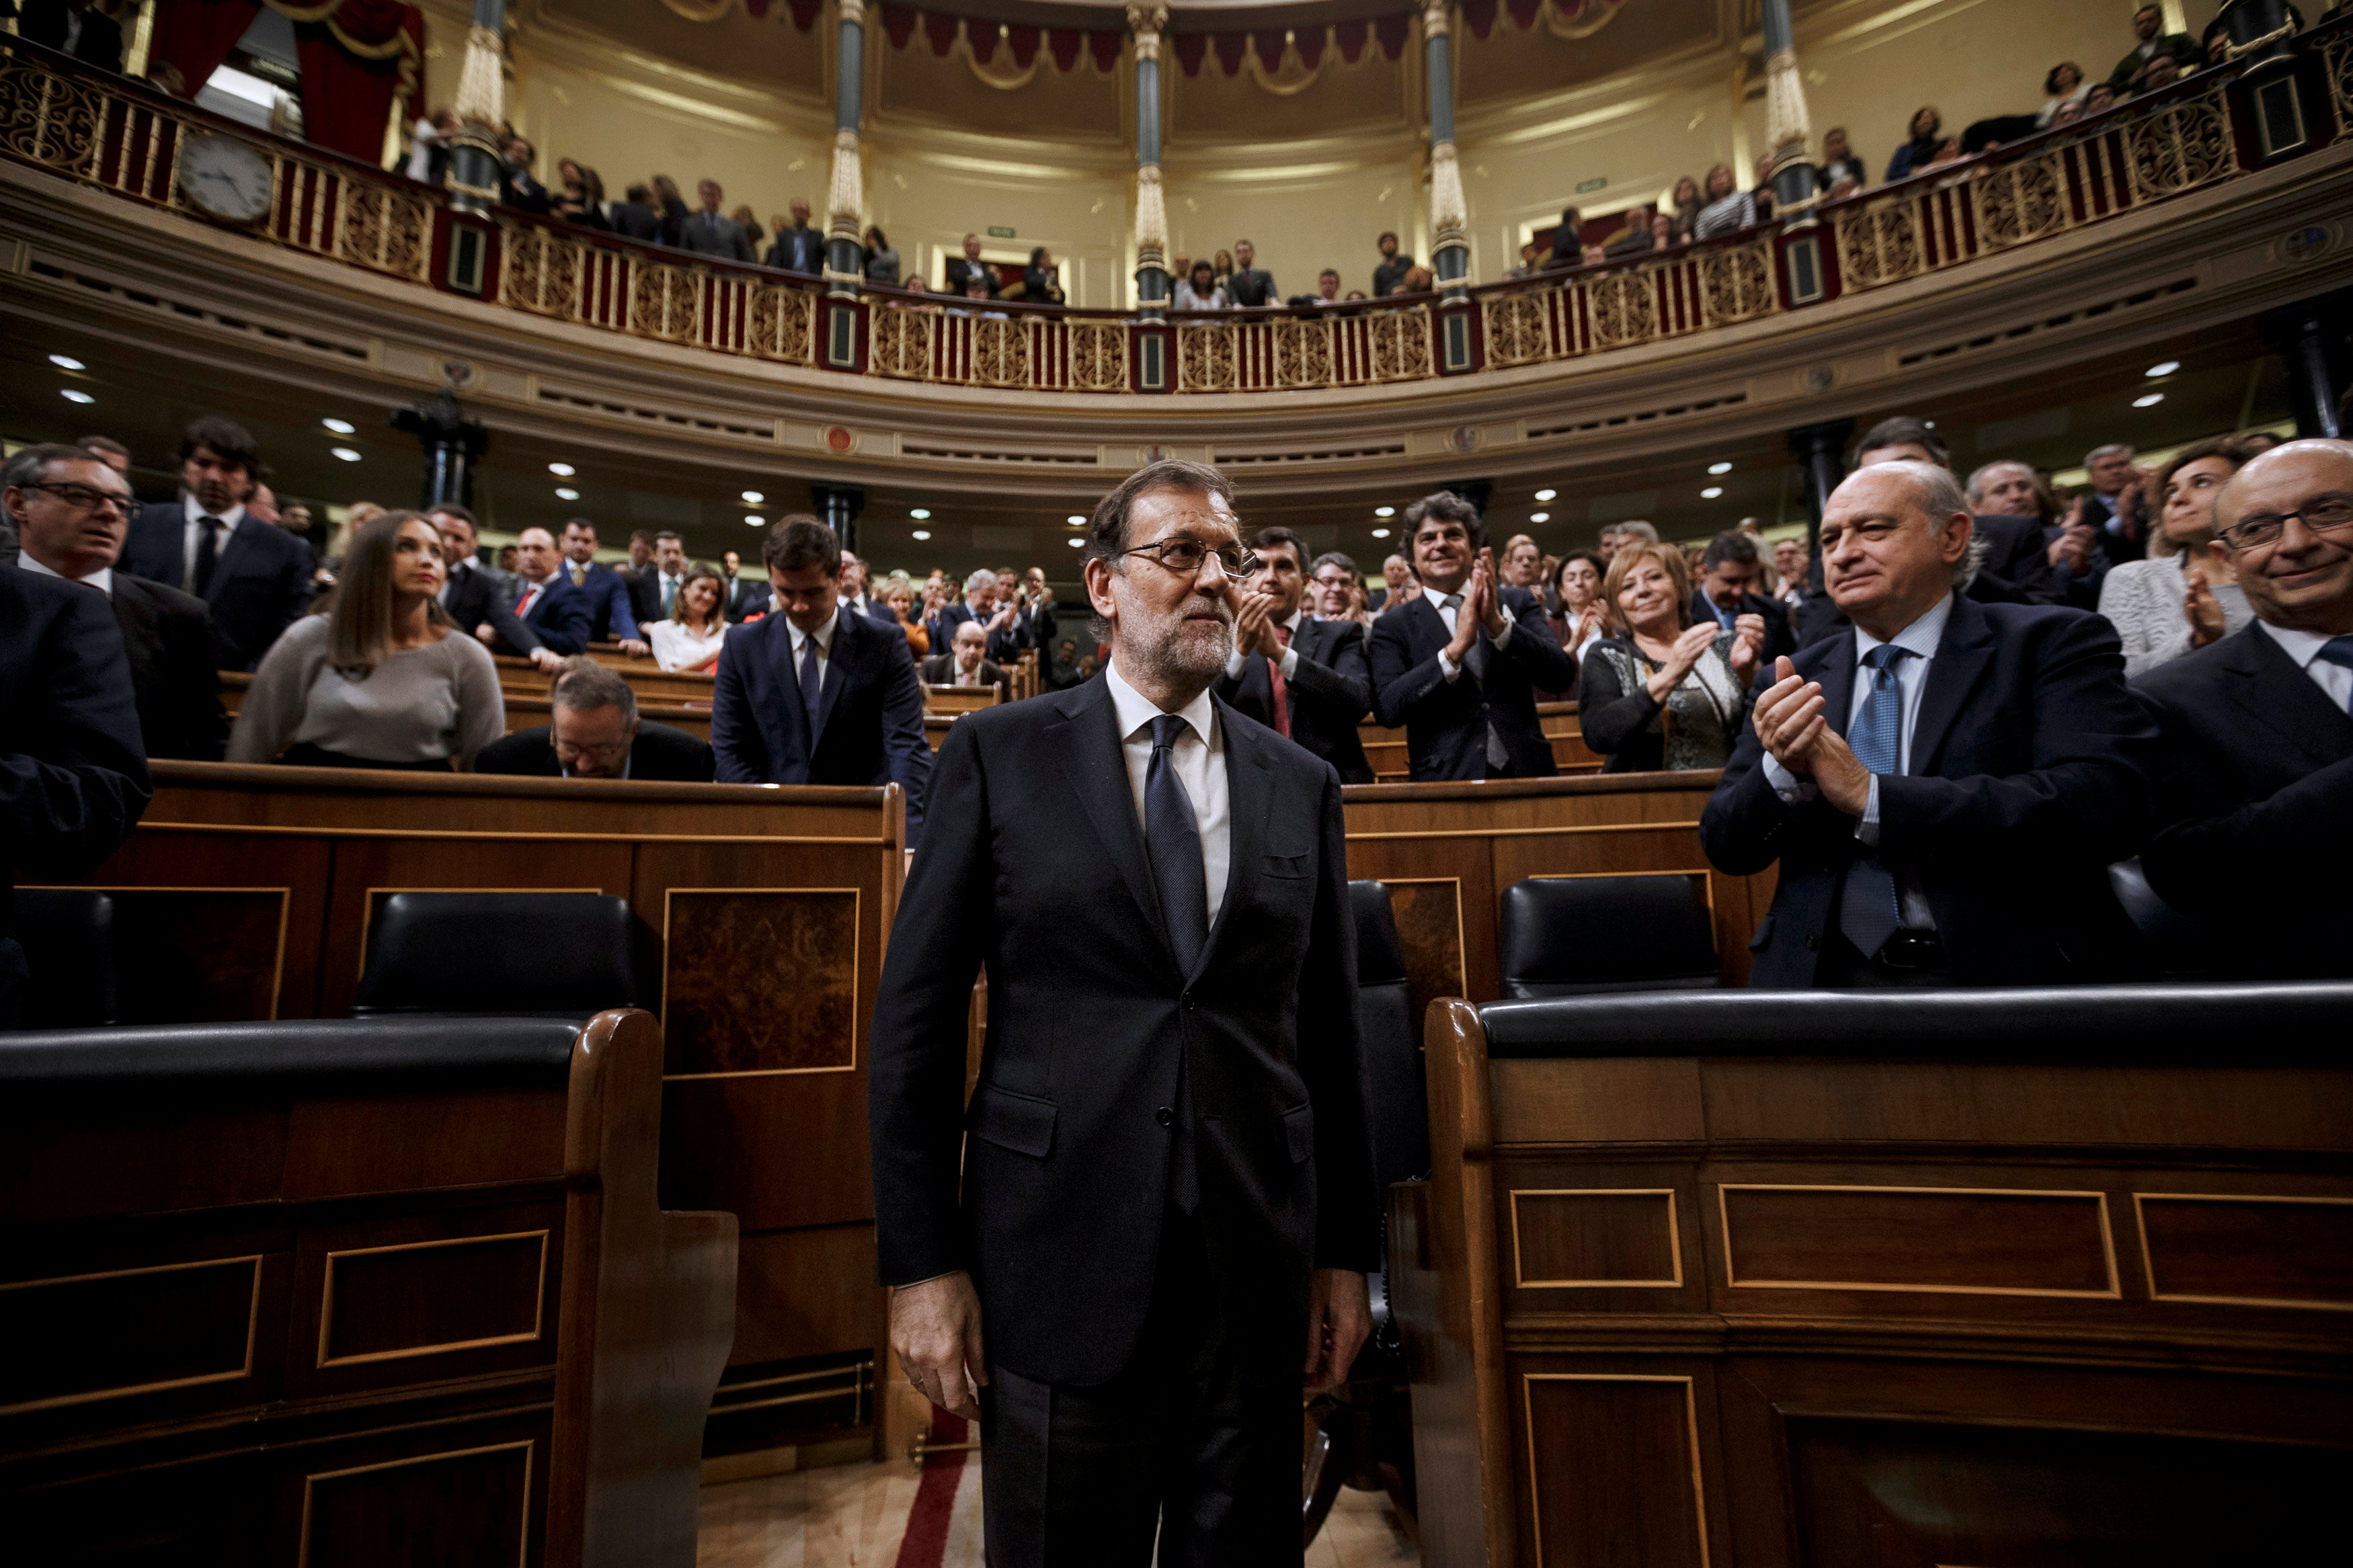 Tras su investidura, Rajoy aseguró que no admitirá que el Congreso, donde carece de mayoría, pueda revocar las políticas que llevó a cabo desde 2011, cuando accedió al poder.